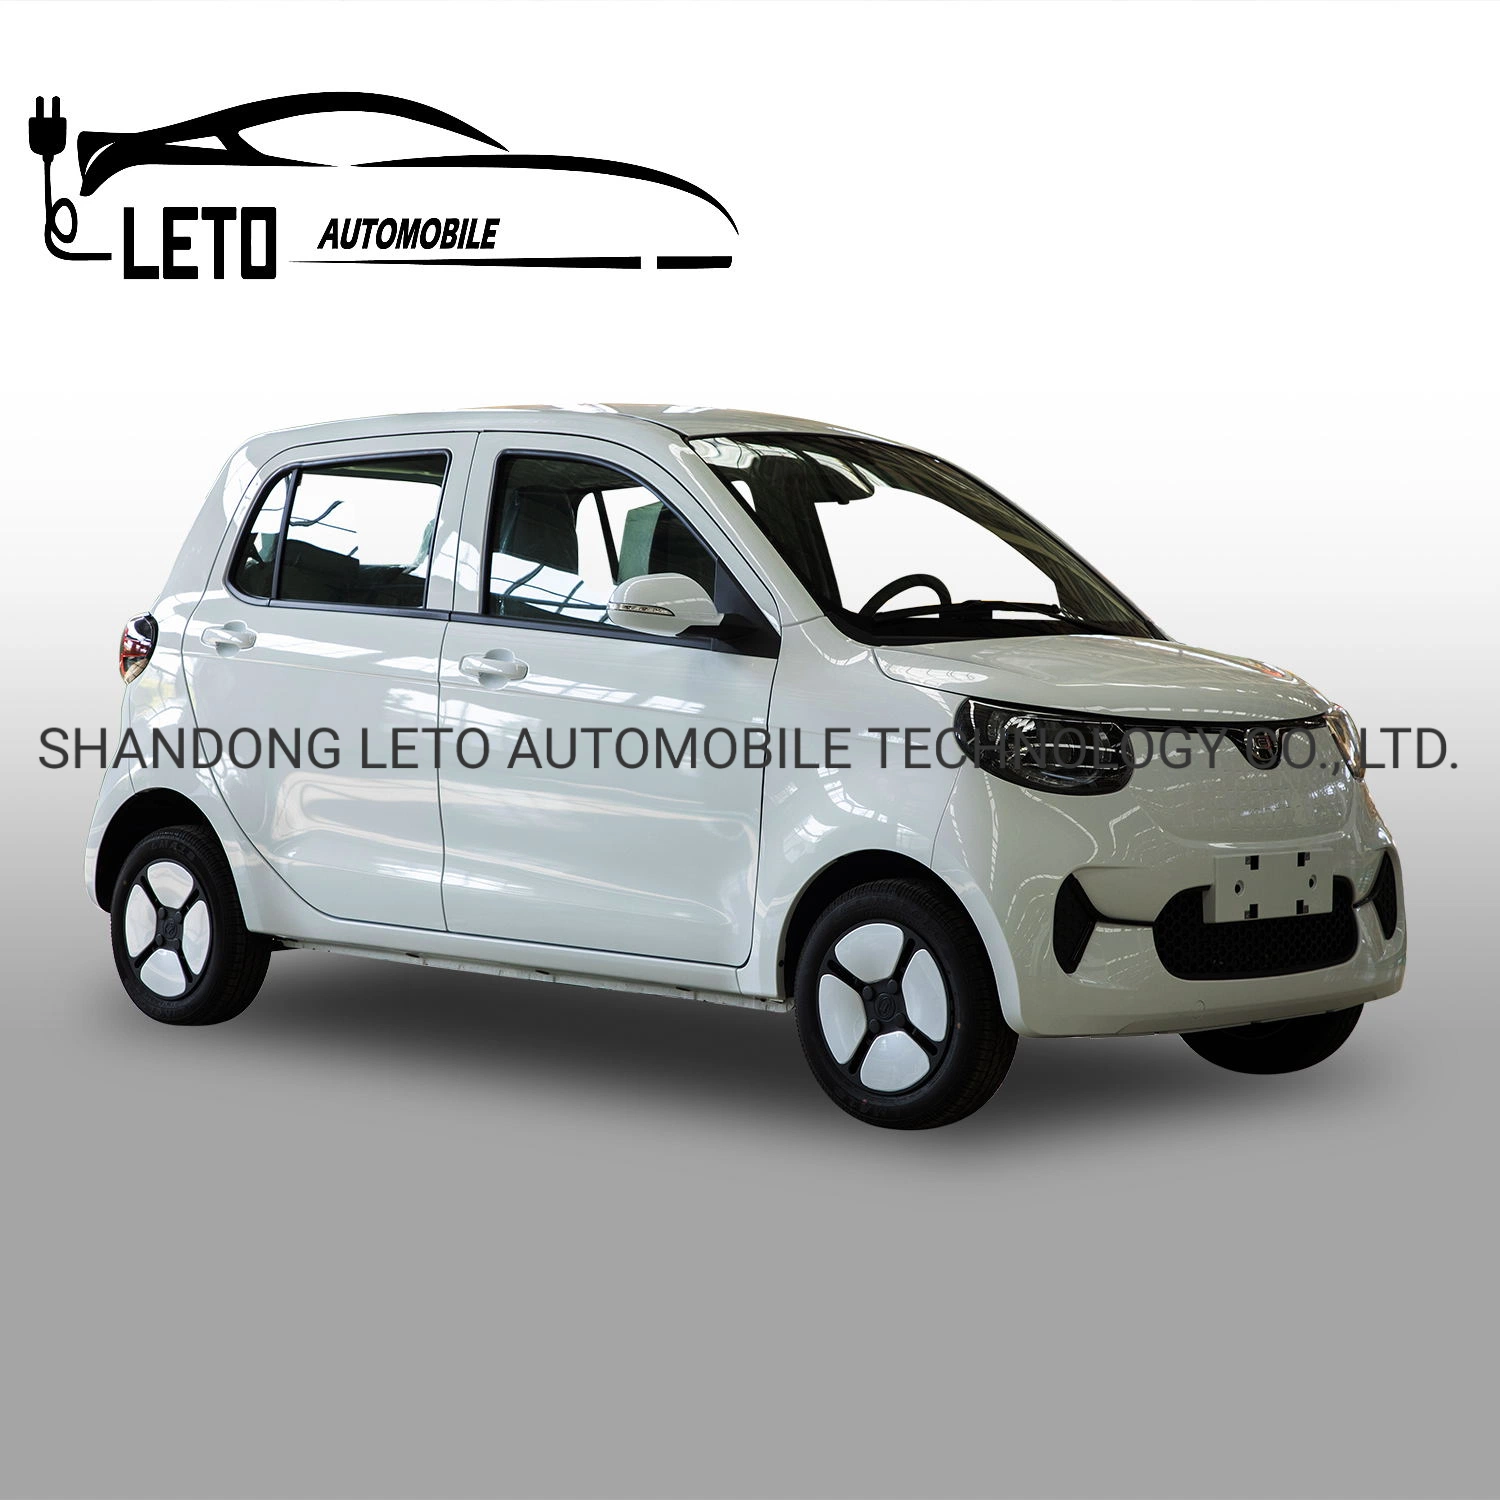 Voitures électriques miniatures à conduite à droite, nouvelles petites voitures mini électriques fabriquées en Chine.